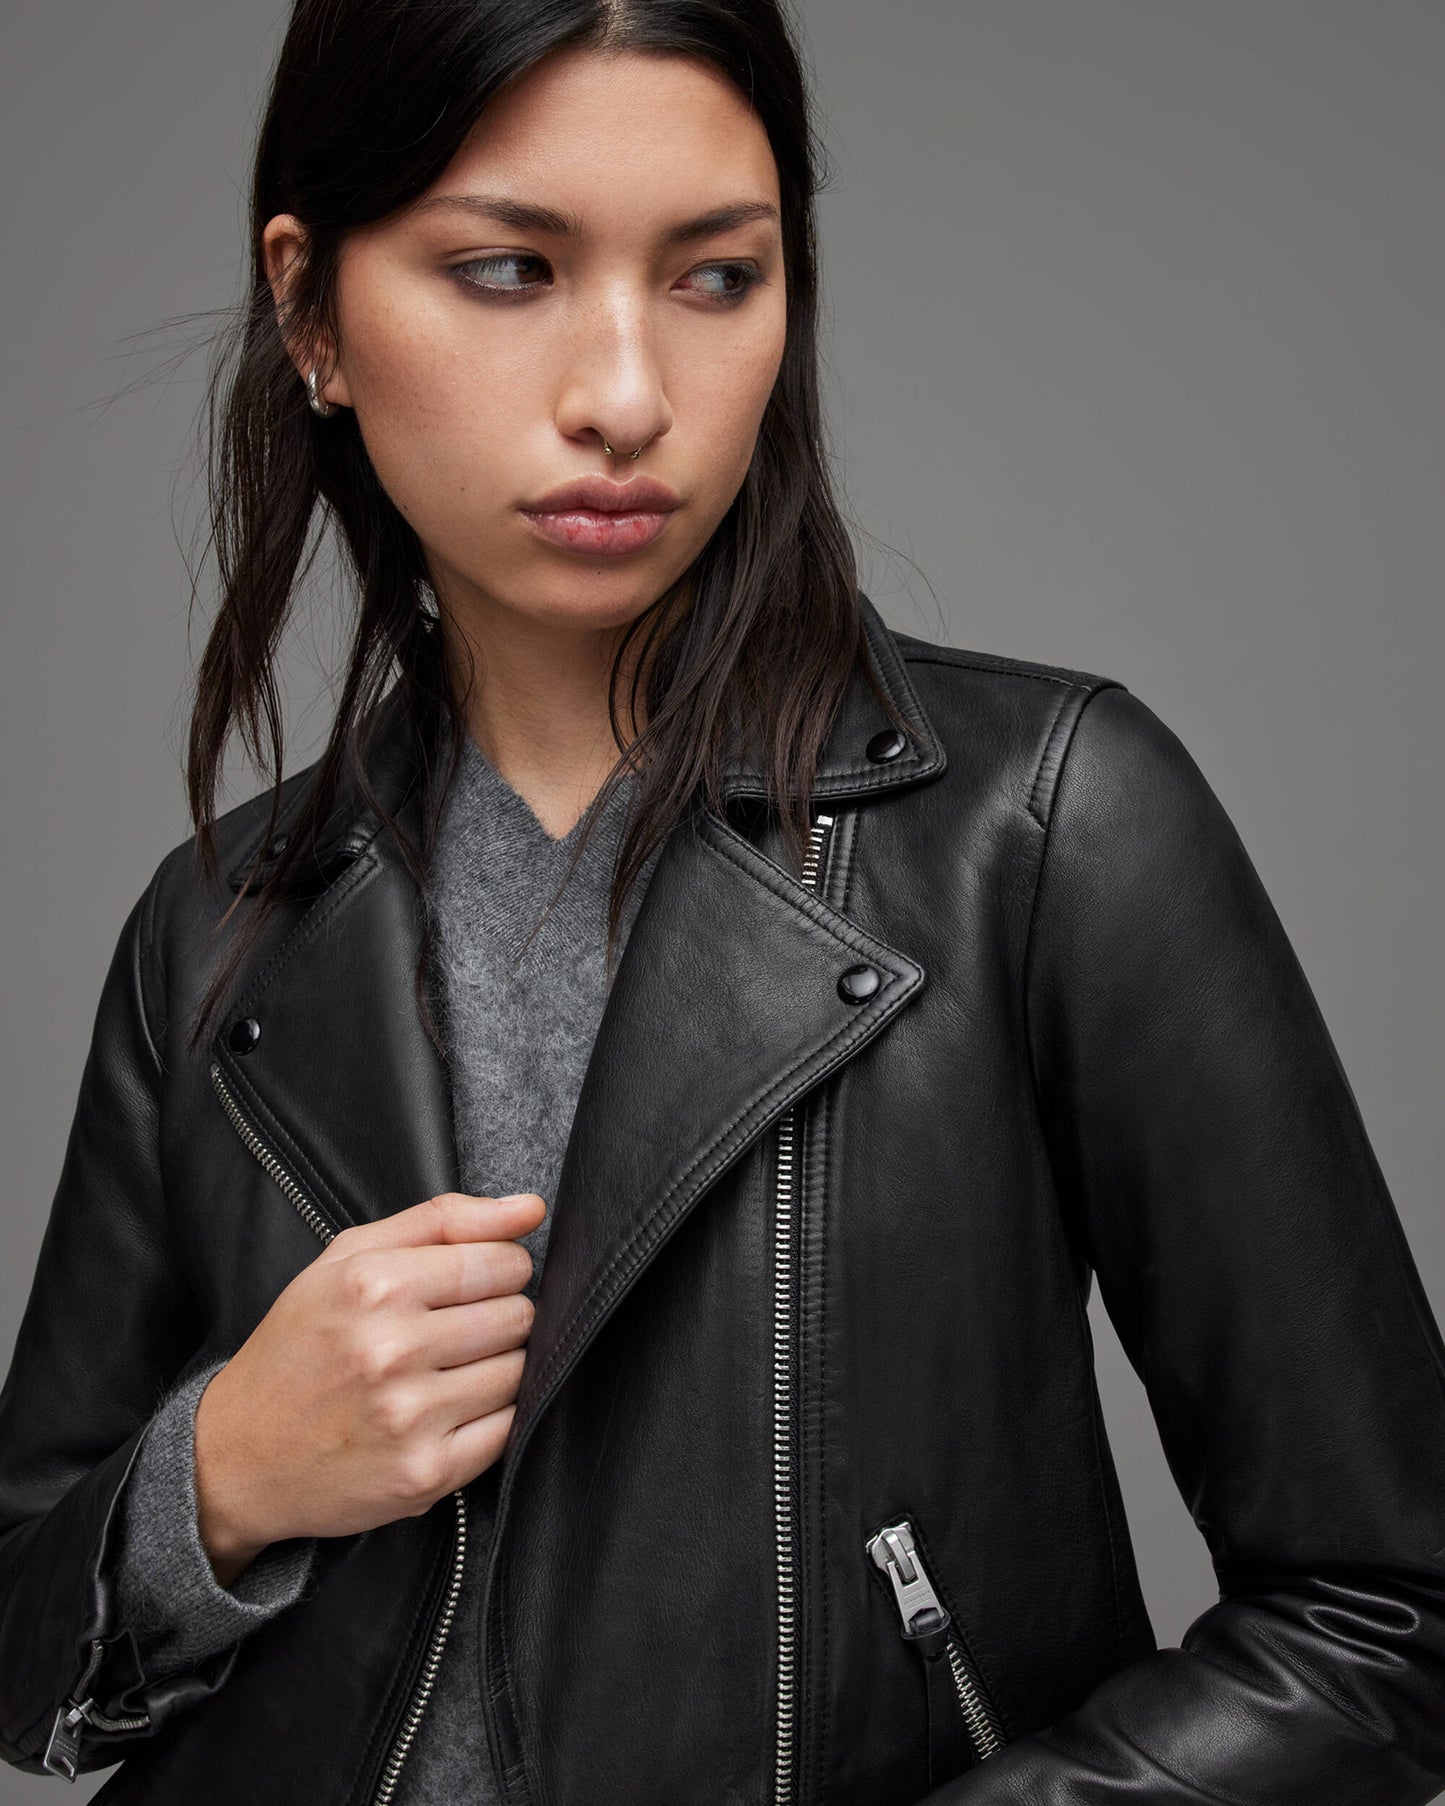 Women's Black Leather Biker Jacket With Belt